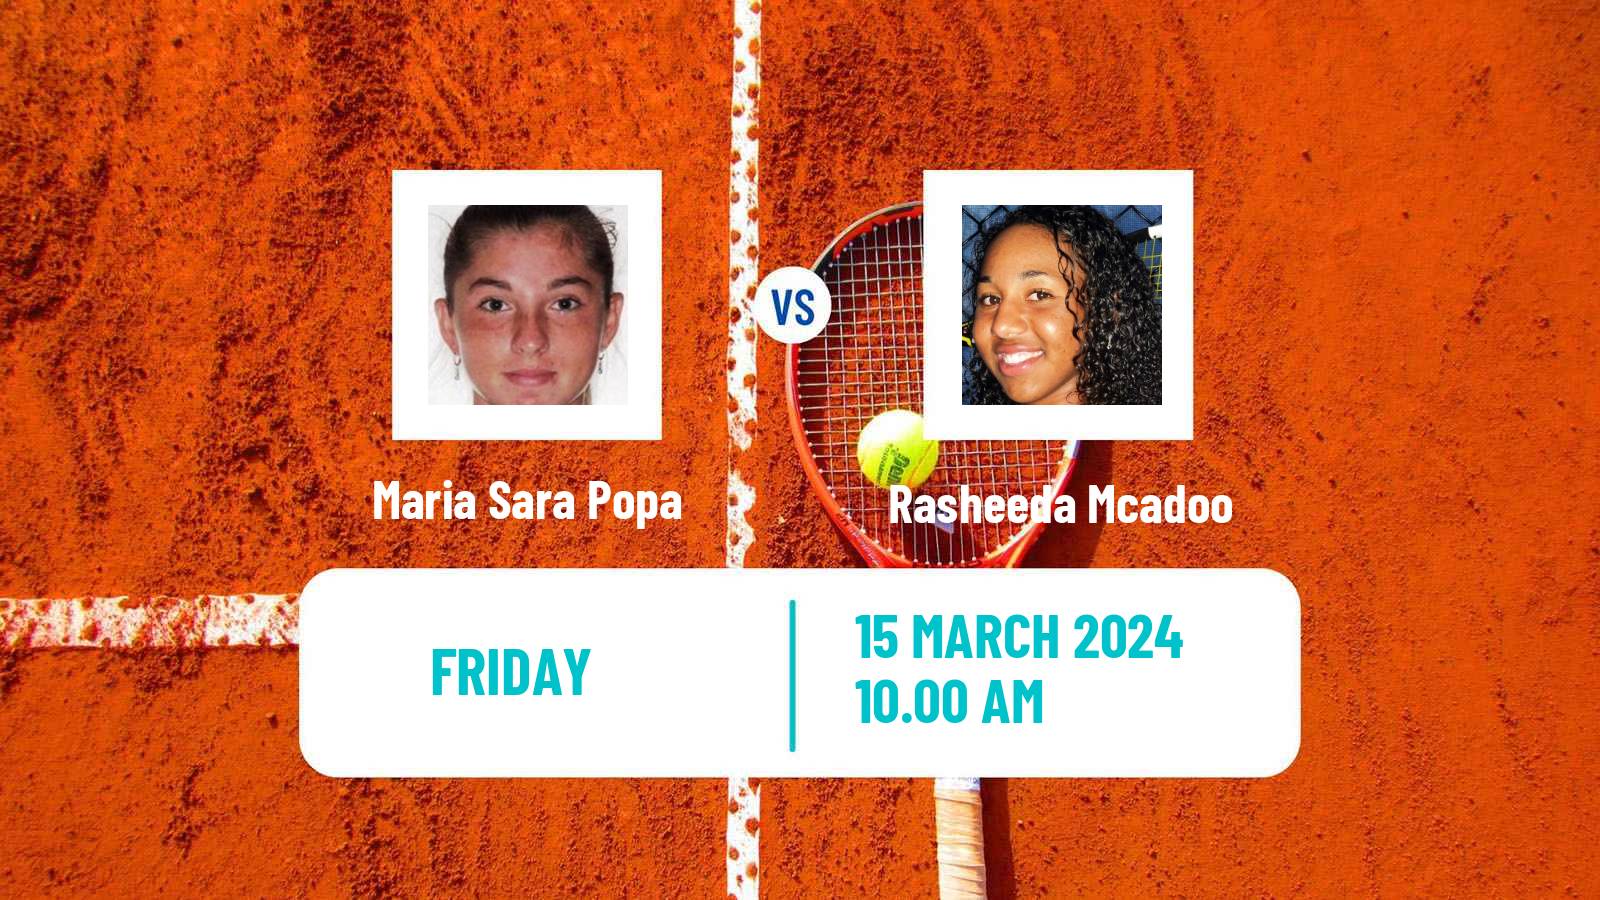 Tennis ITF W35 Santo Domingo 2 Women Maria Sara Popa - Rasheeda Mcadoo